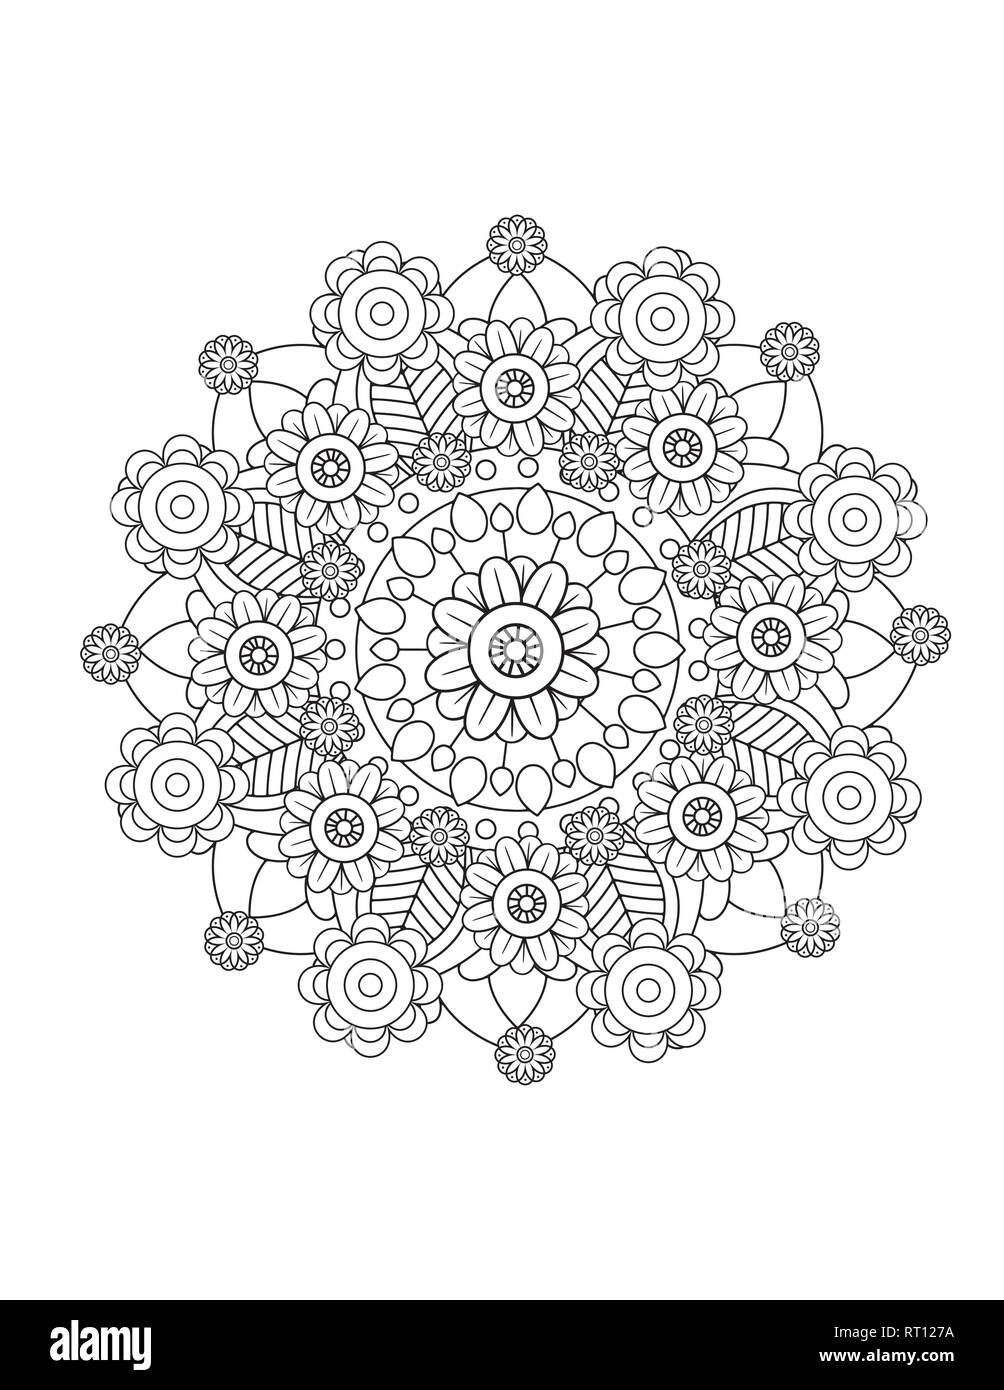 Mandala florale Muster in Schwarz und Weiß. Nach Malbuch Seite mit Blumen und Mandalas. Orientalische Muster, Vintage dekorative Elemente. Stock Vektor